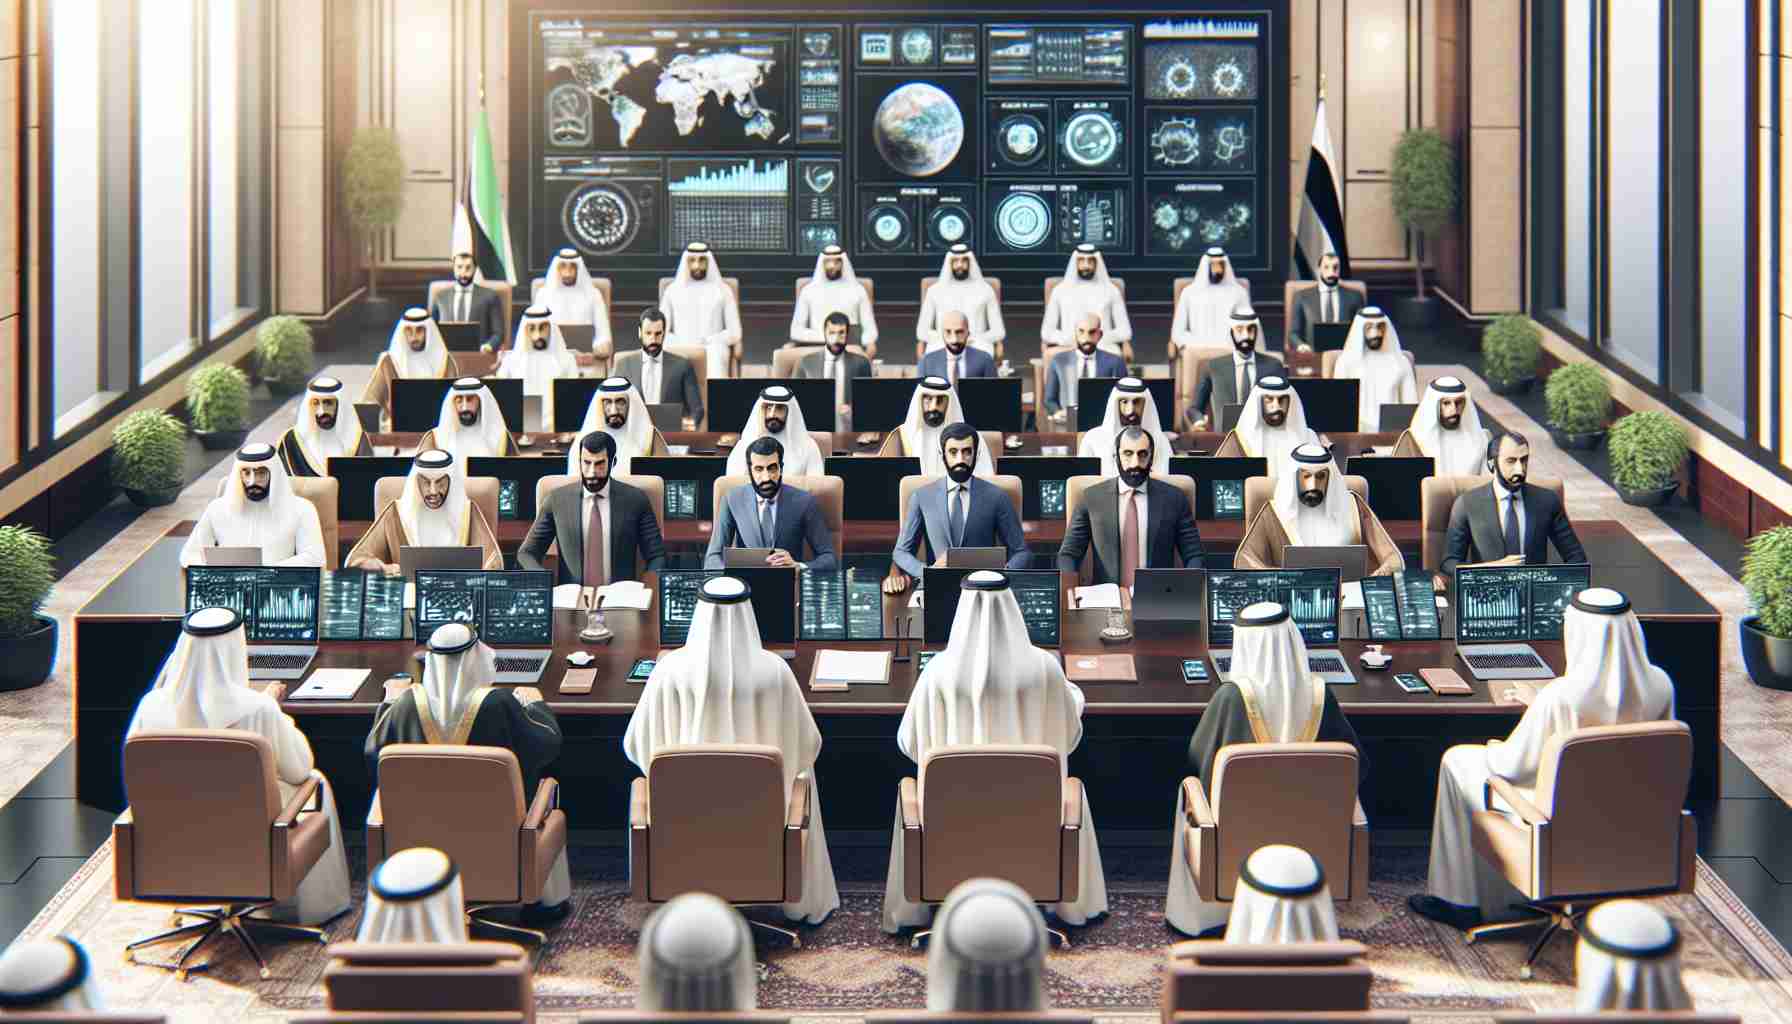 المجموعة البرلمانية العربية تركز على التكنولوجيا والتنمية المستدامة